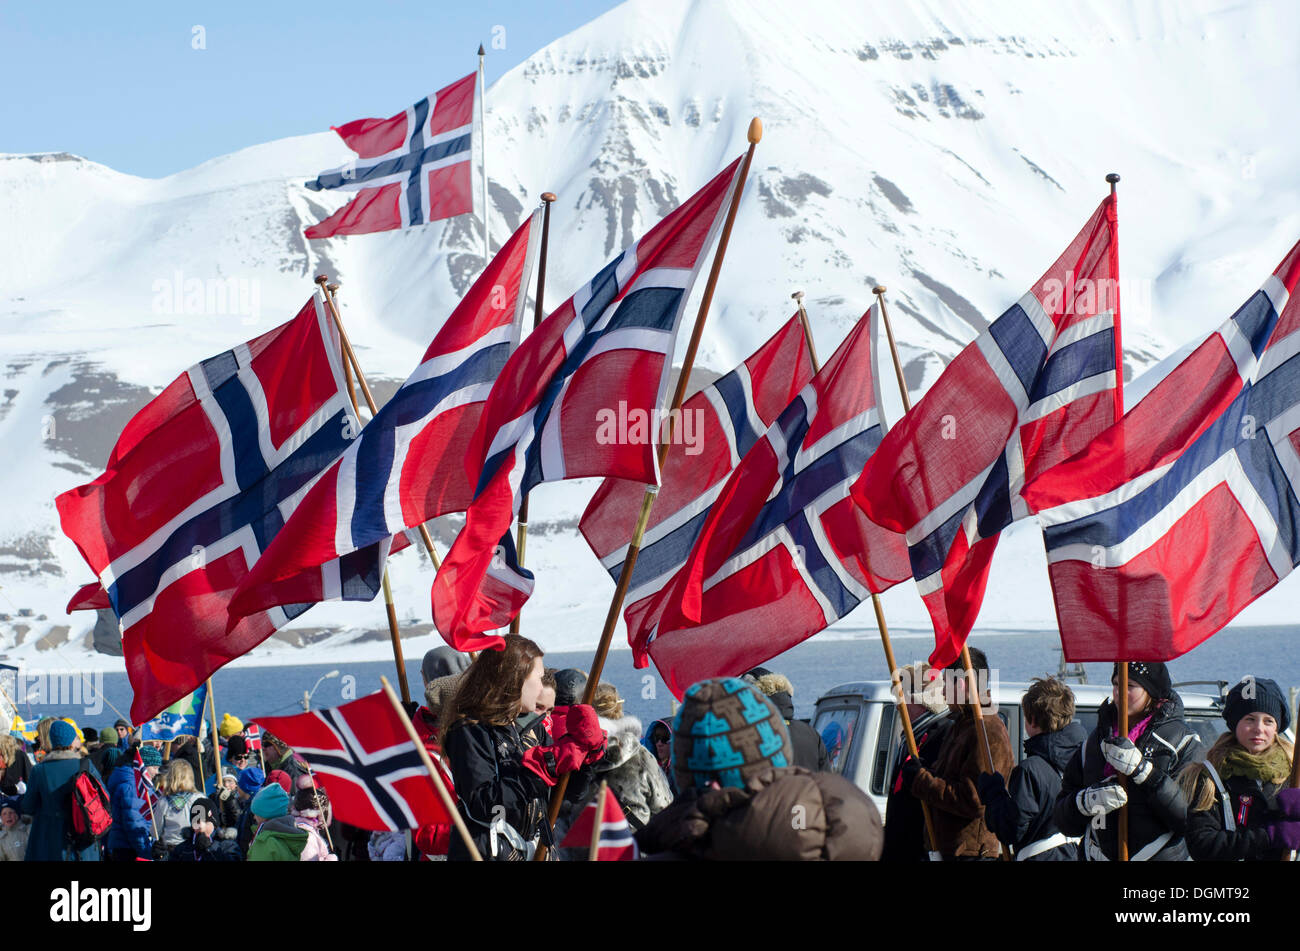 Drapeaux national norvégien norvégien sur la fête nationale, le 17 mai, menés par Longyearbyen, Spitsbergen, Svalbard, Norvège Banque D'Images